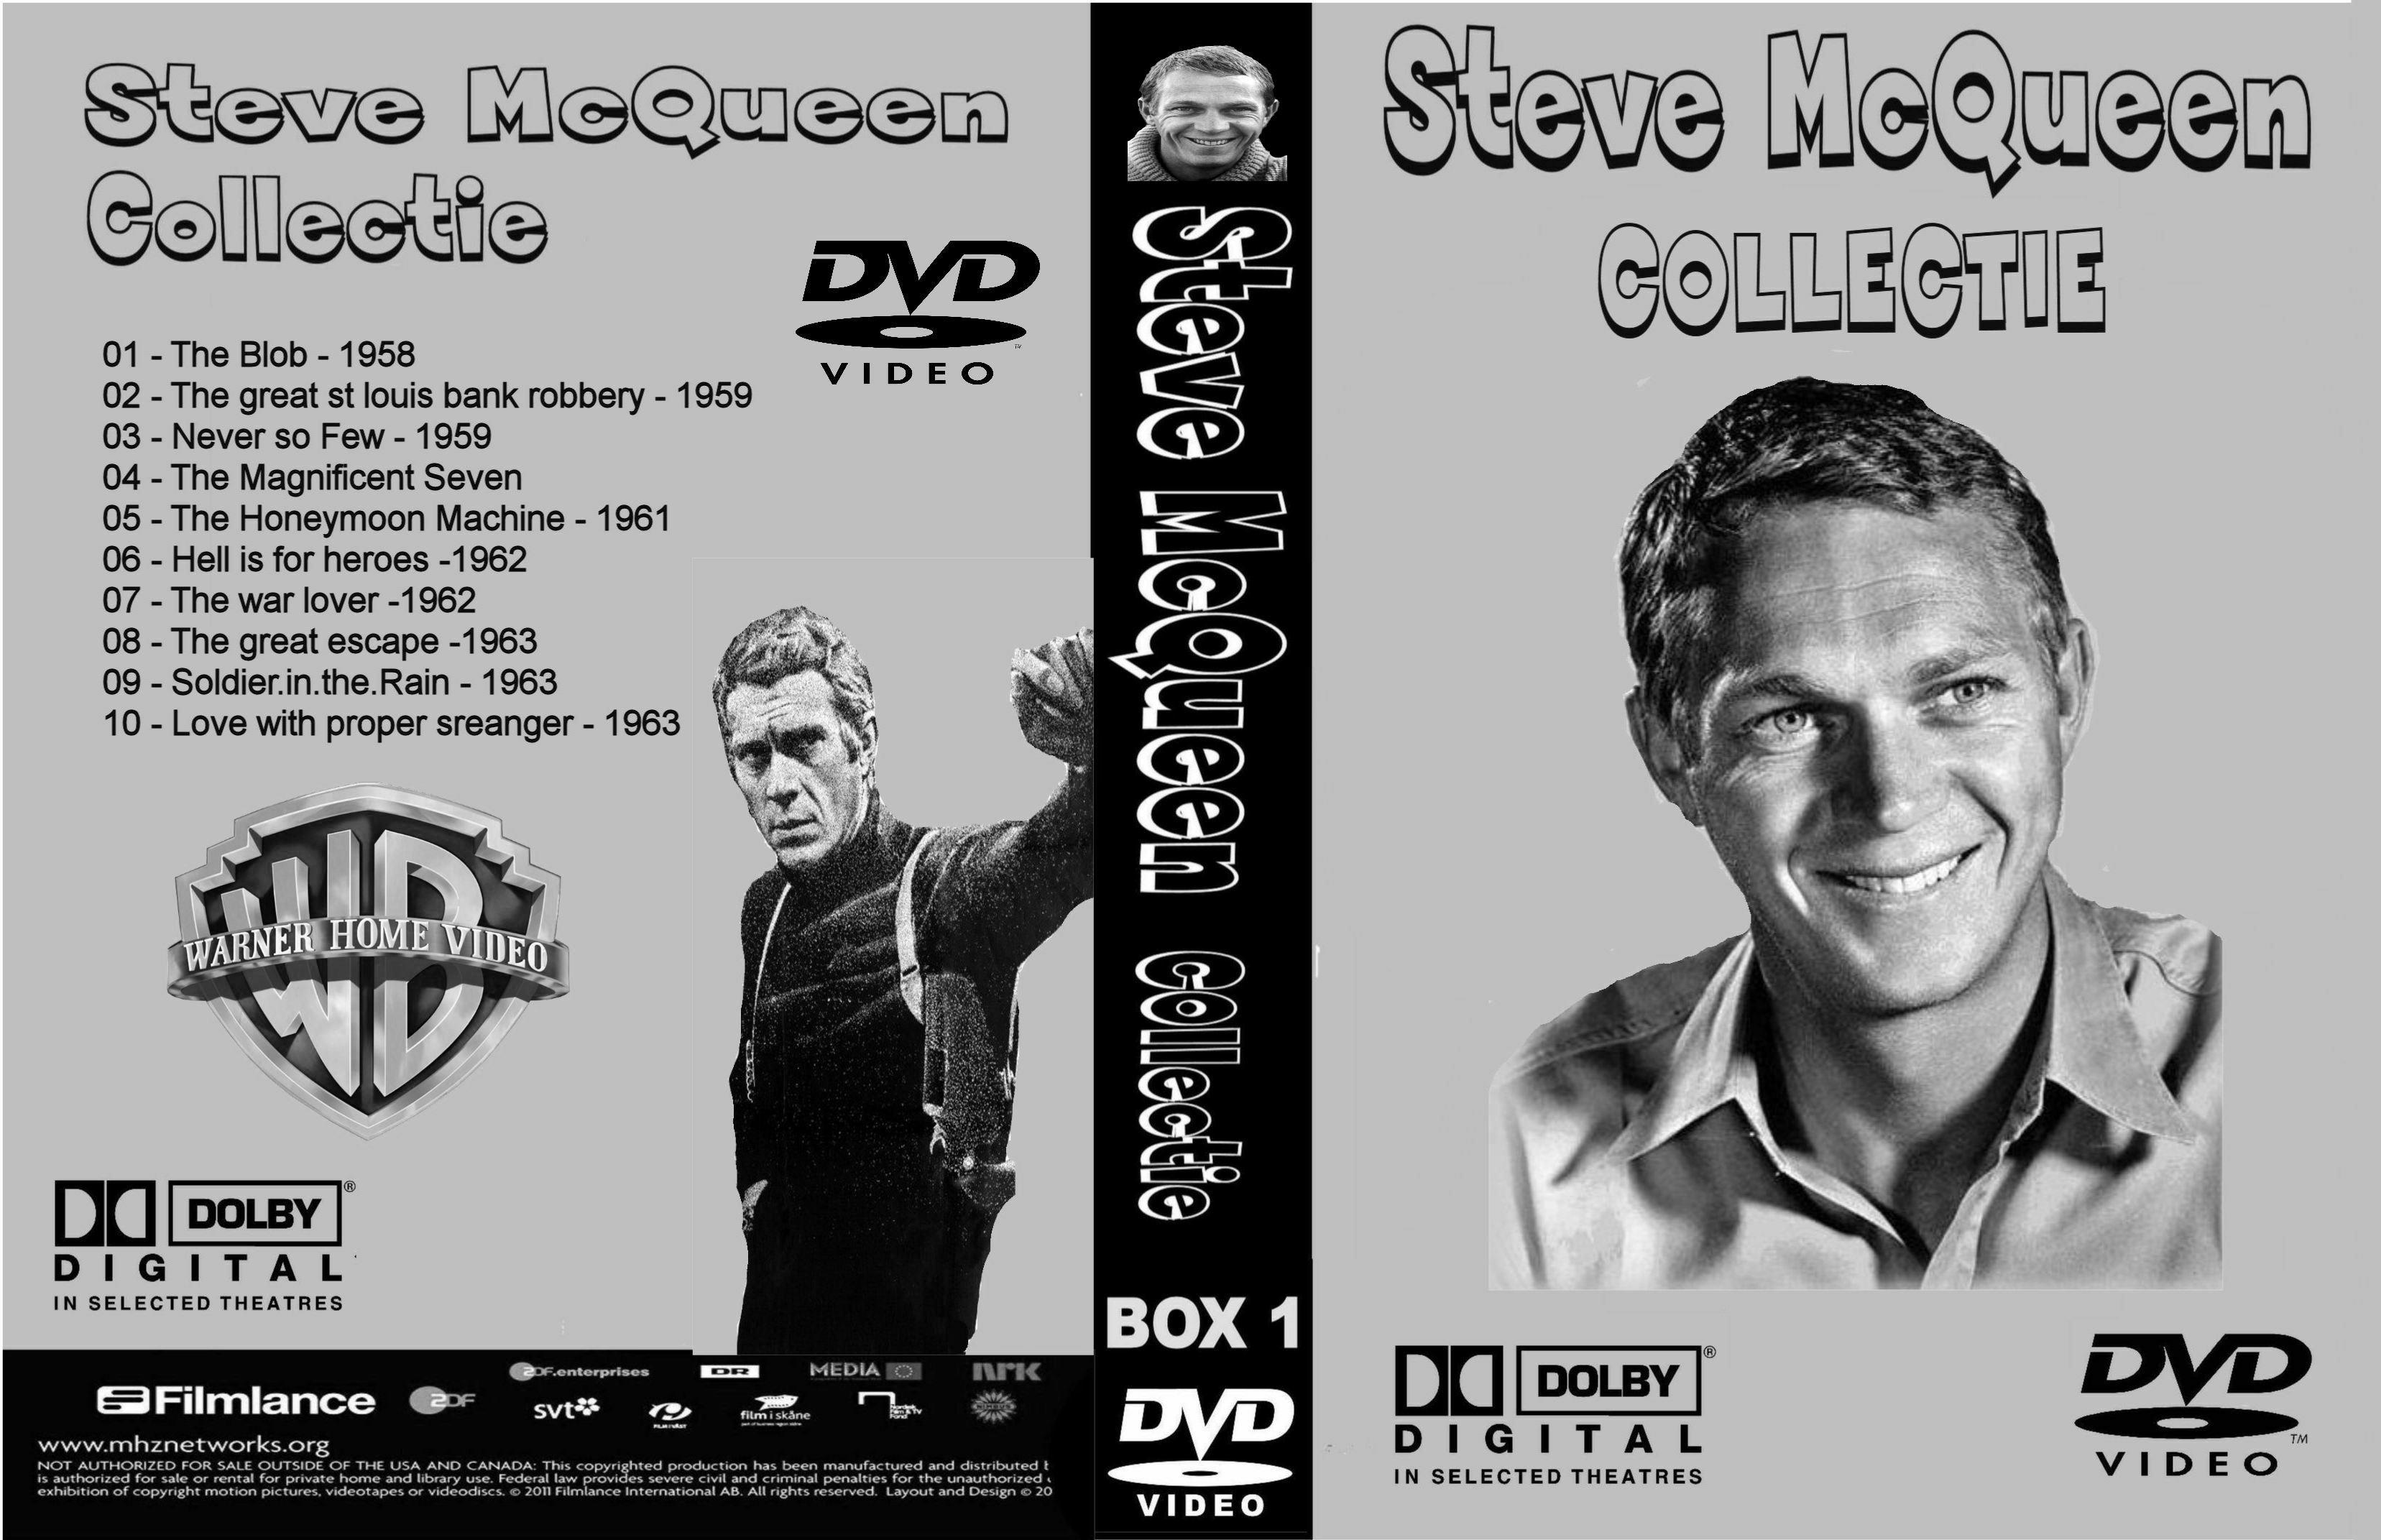 Steve McQueen Collectiie Box 1 DvD 8 van 10